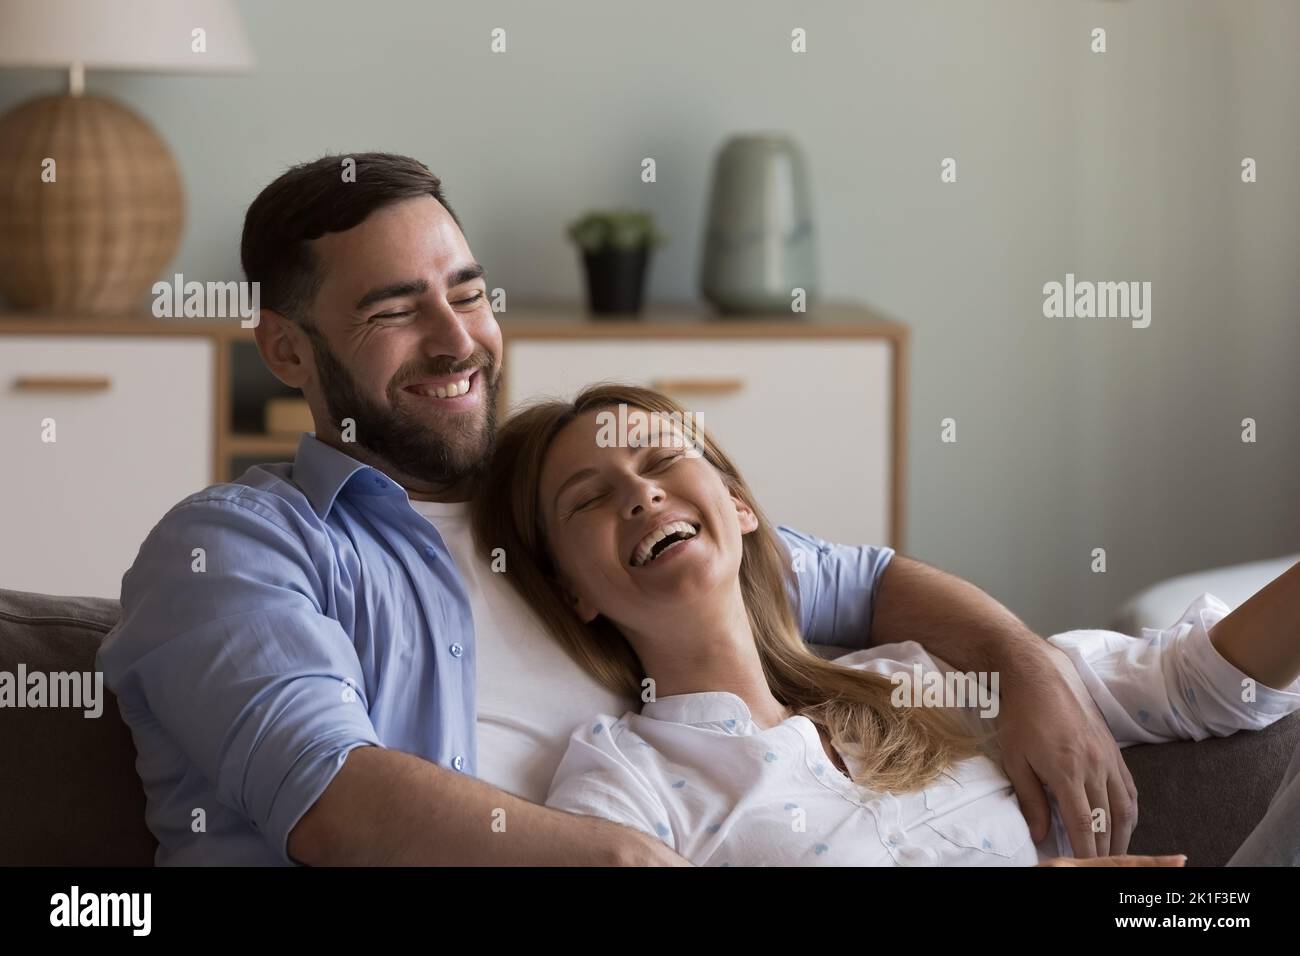 Entspanntes, glückliches Dating-Paar in der Liebe, das sich auf der gemütlichen Couch ausruht Stockfoto